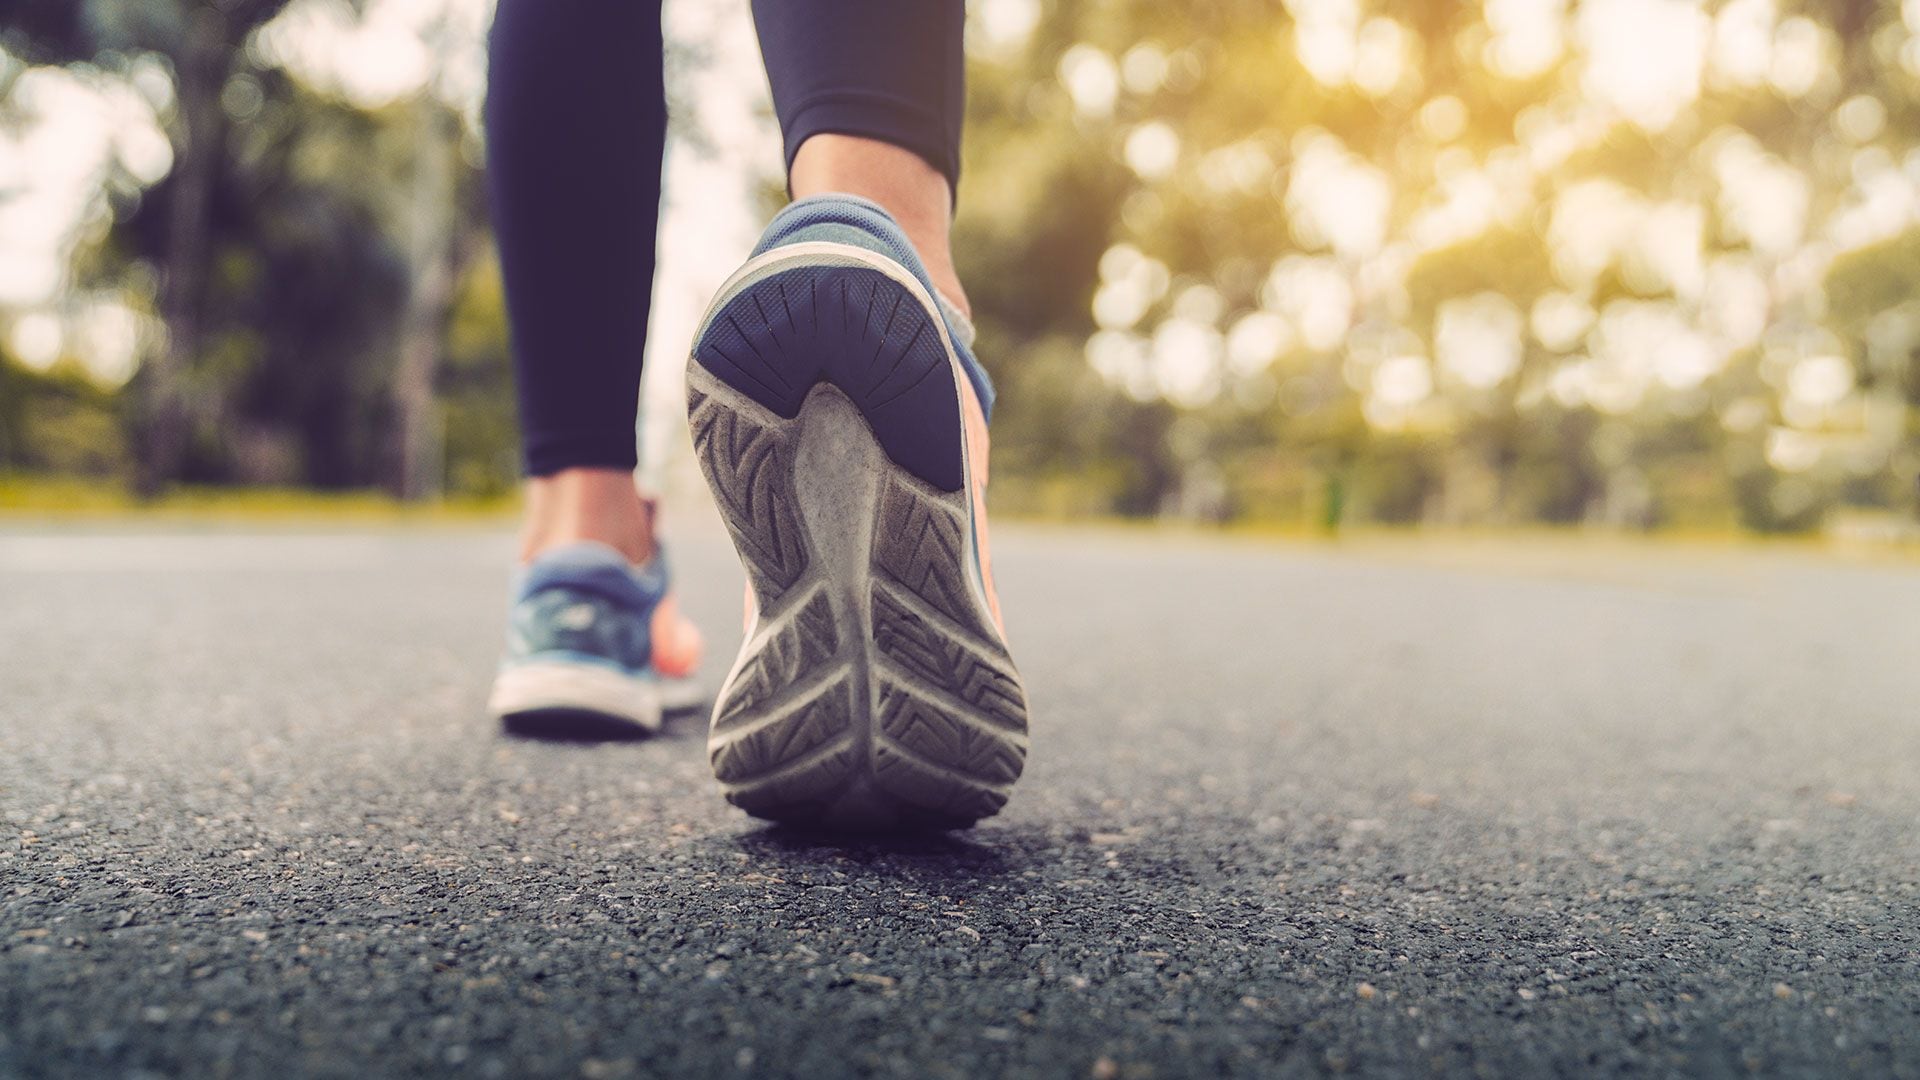 Para que la caminata habitual se convierta en un ejercicio que mejore el estado físico, debe adoptarse una buena postura y movimientos cuidados, según expertos de Mayo Clinic (Getty)